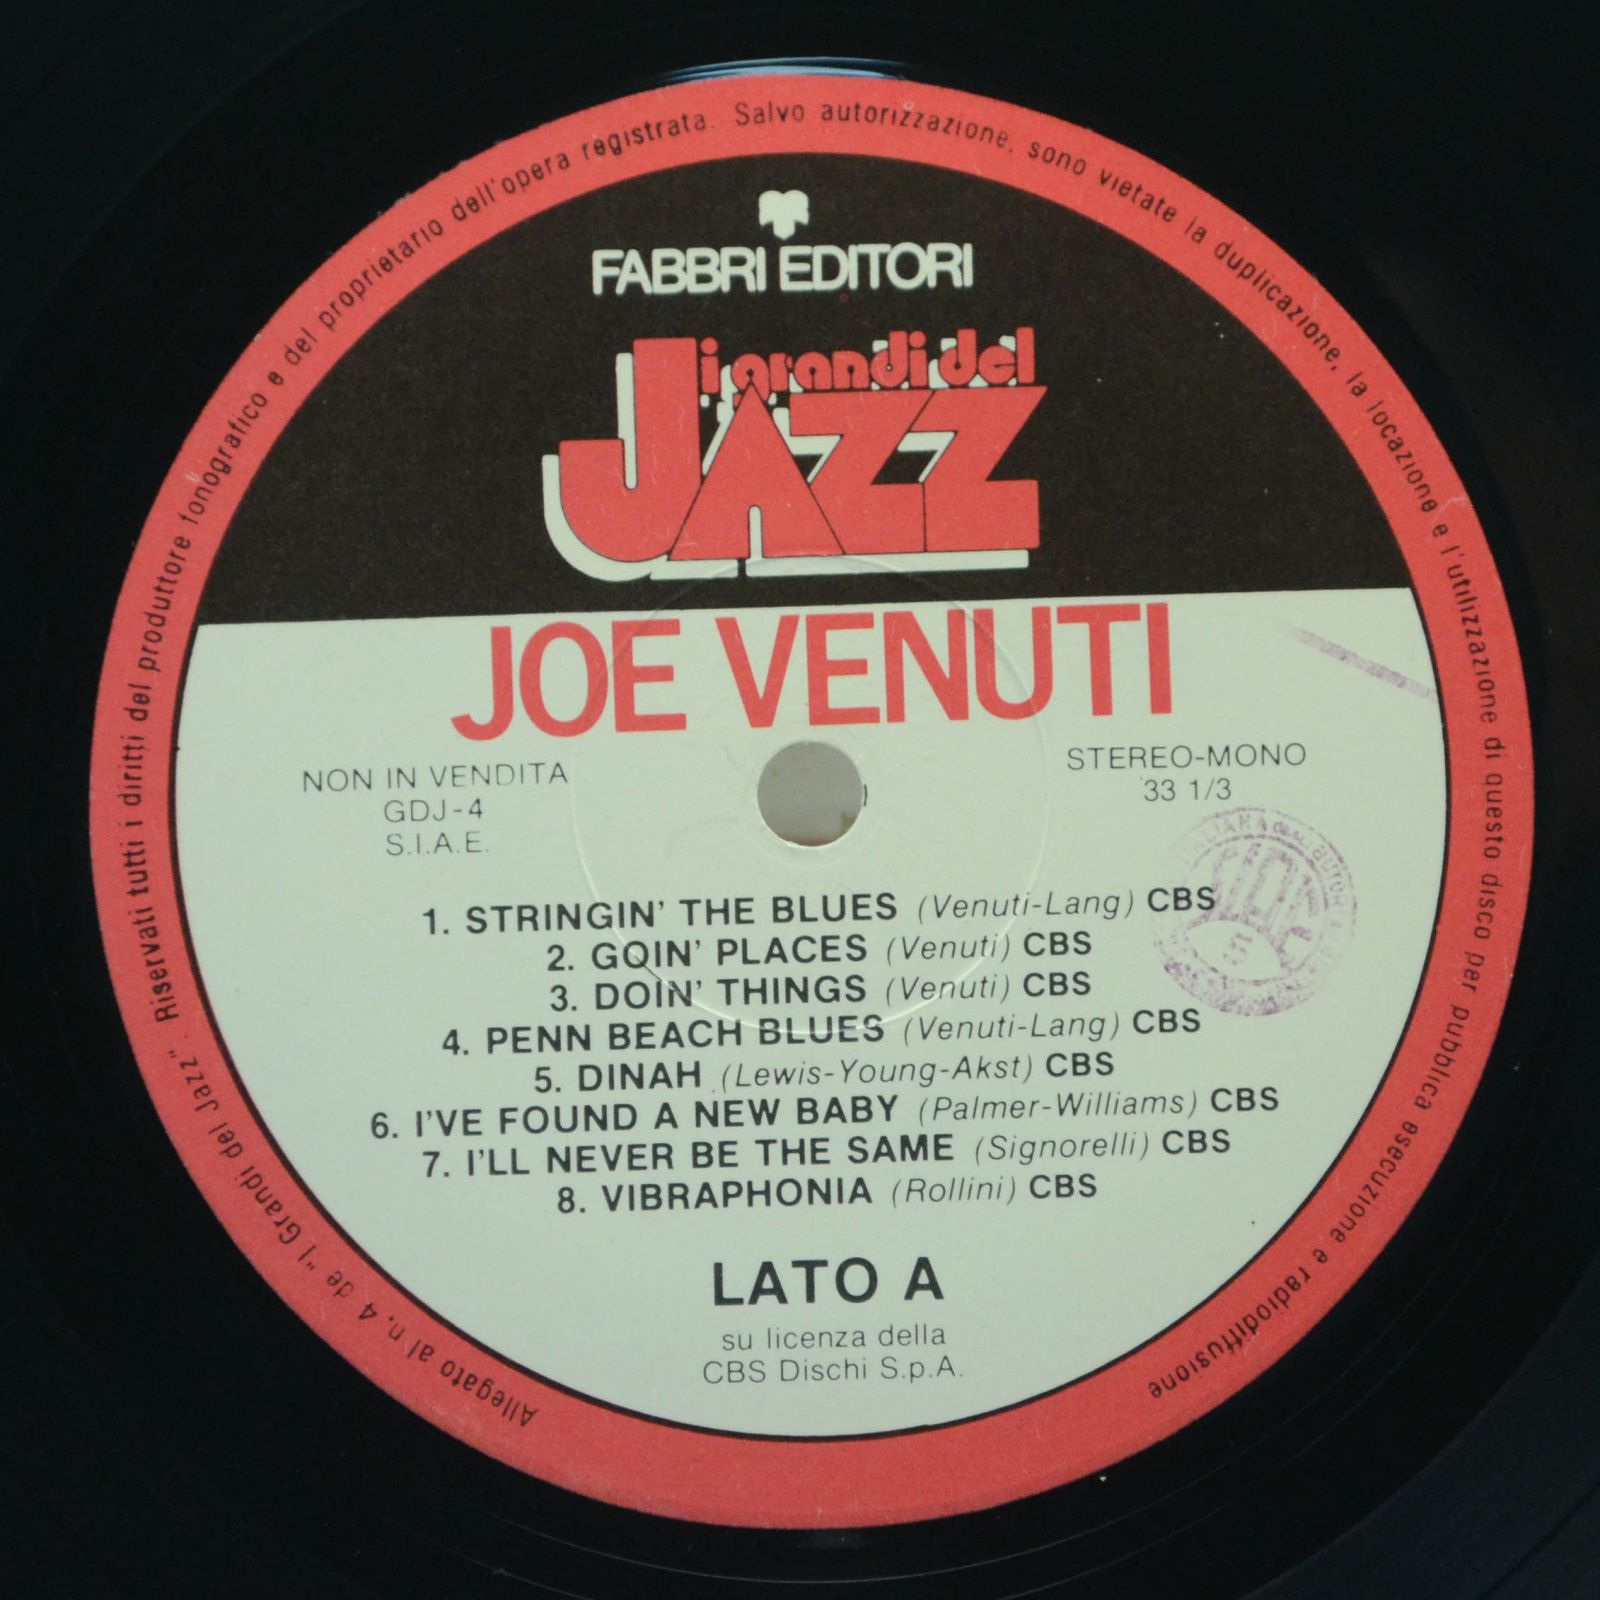 Joe Venuti — Joe Venuti, 1981